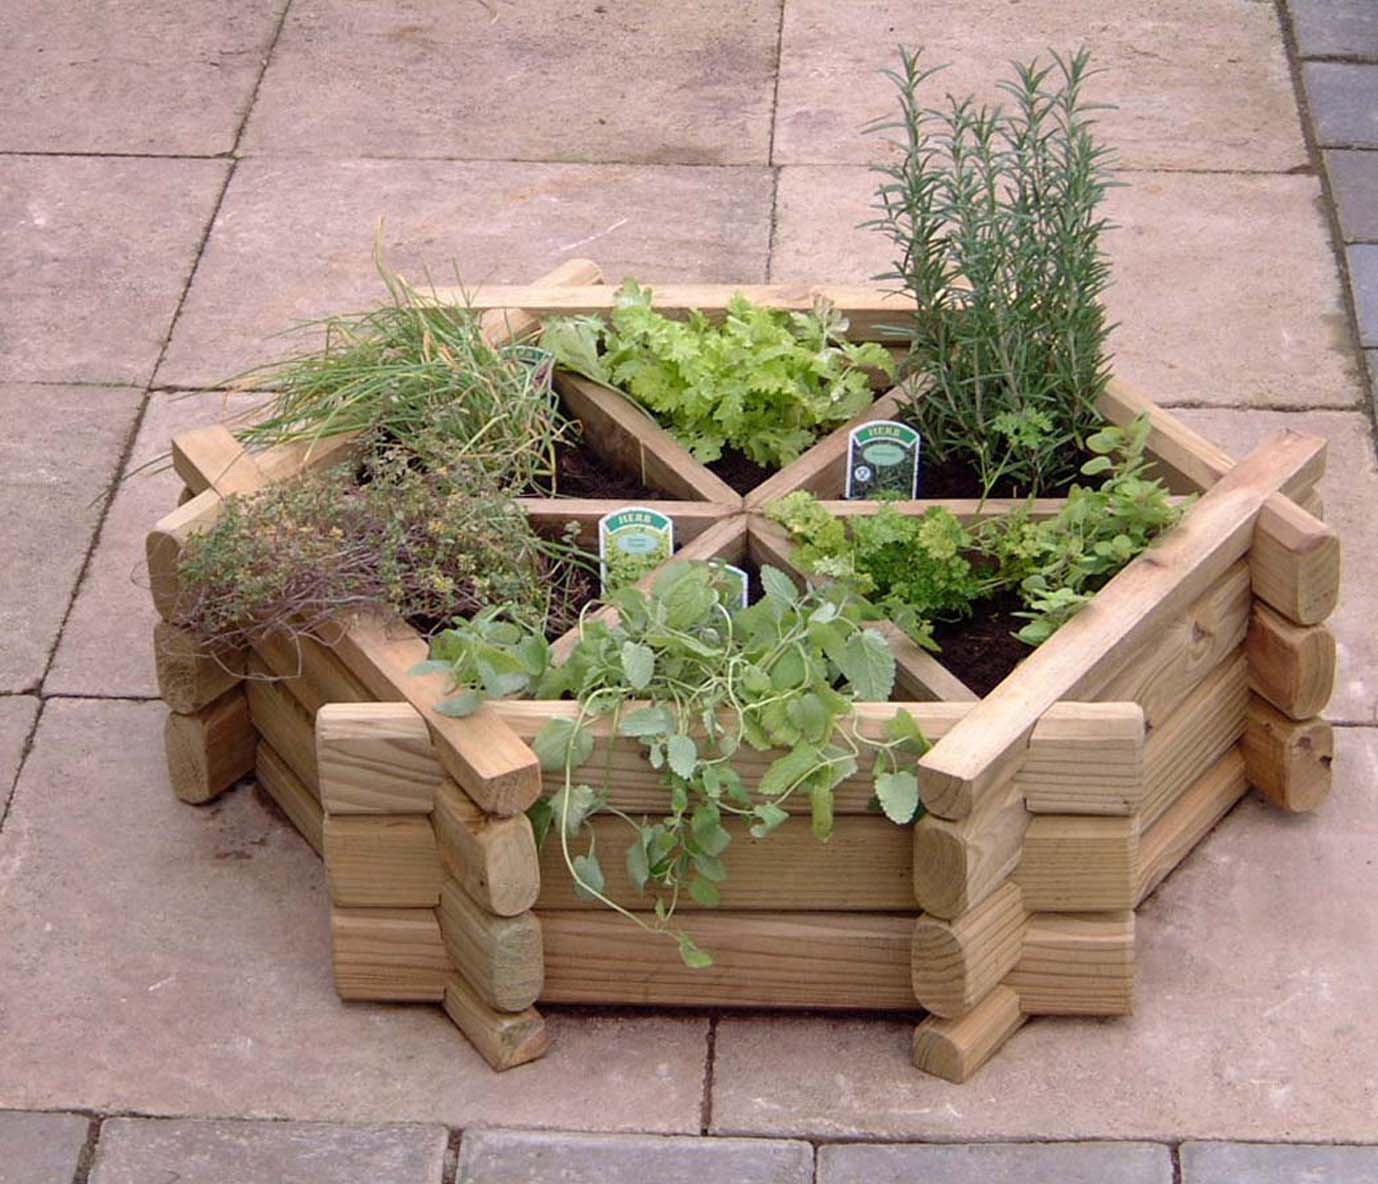 DIY Outdoor Herb Garden
 8 Interesting DIY Herb Gardens YourAmazingPlaces